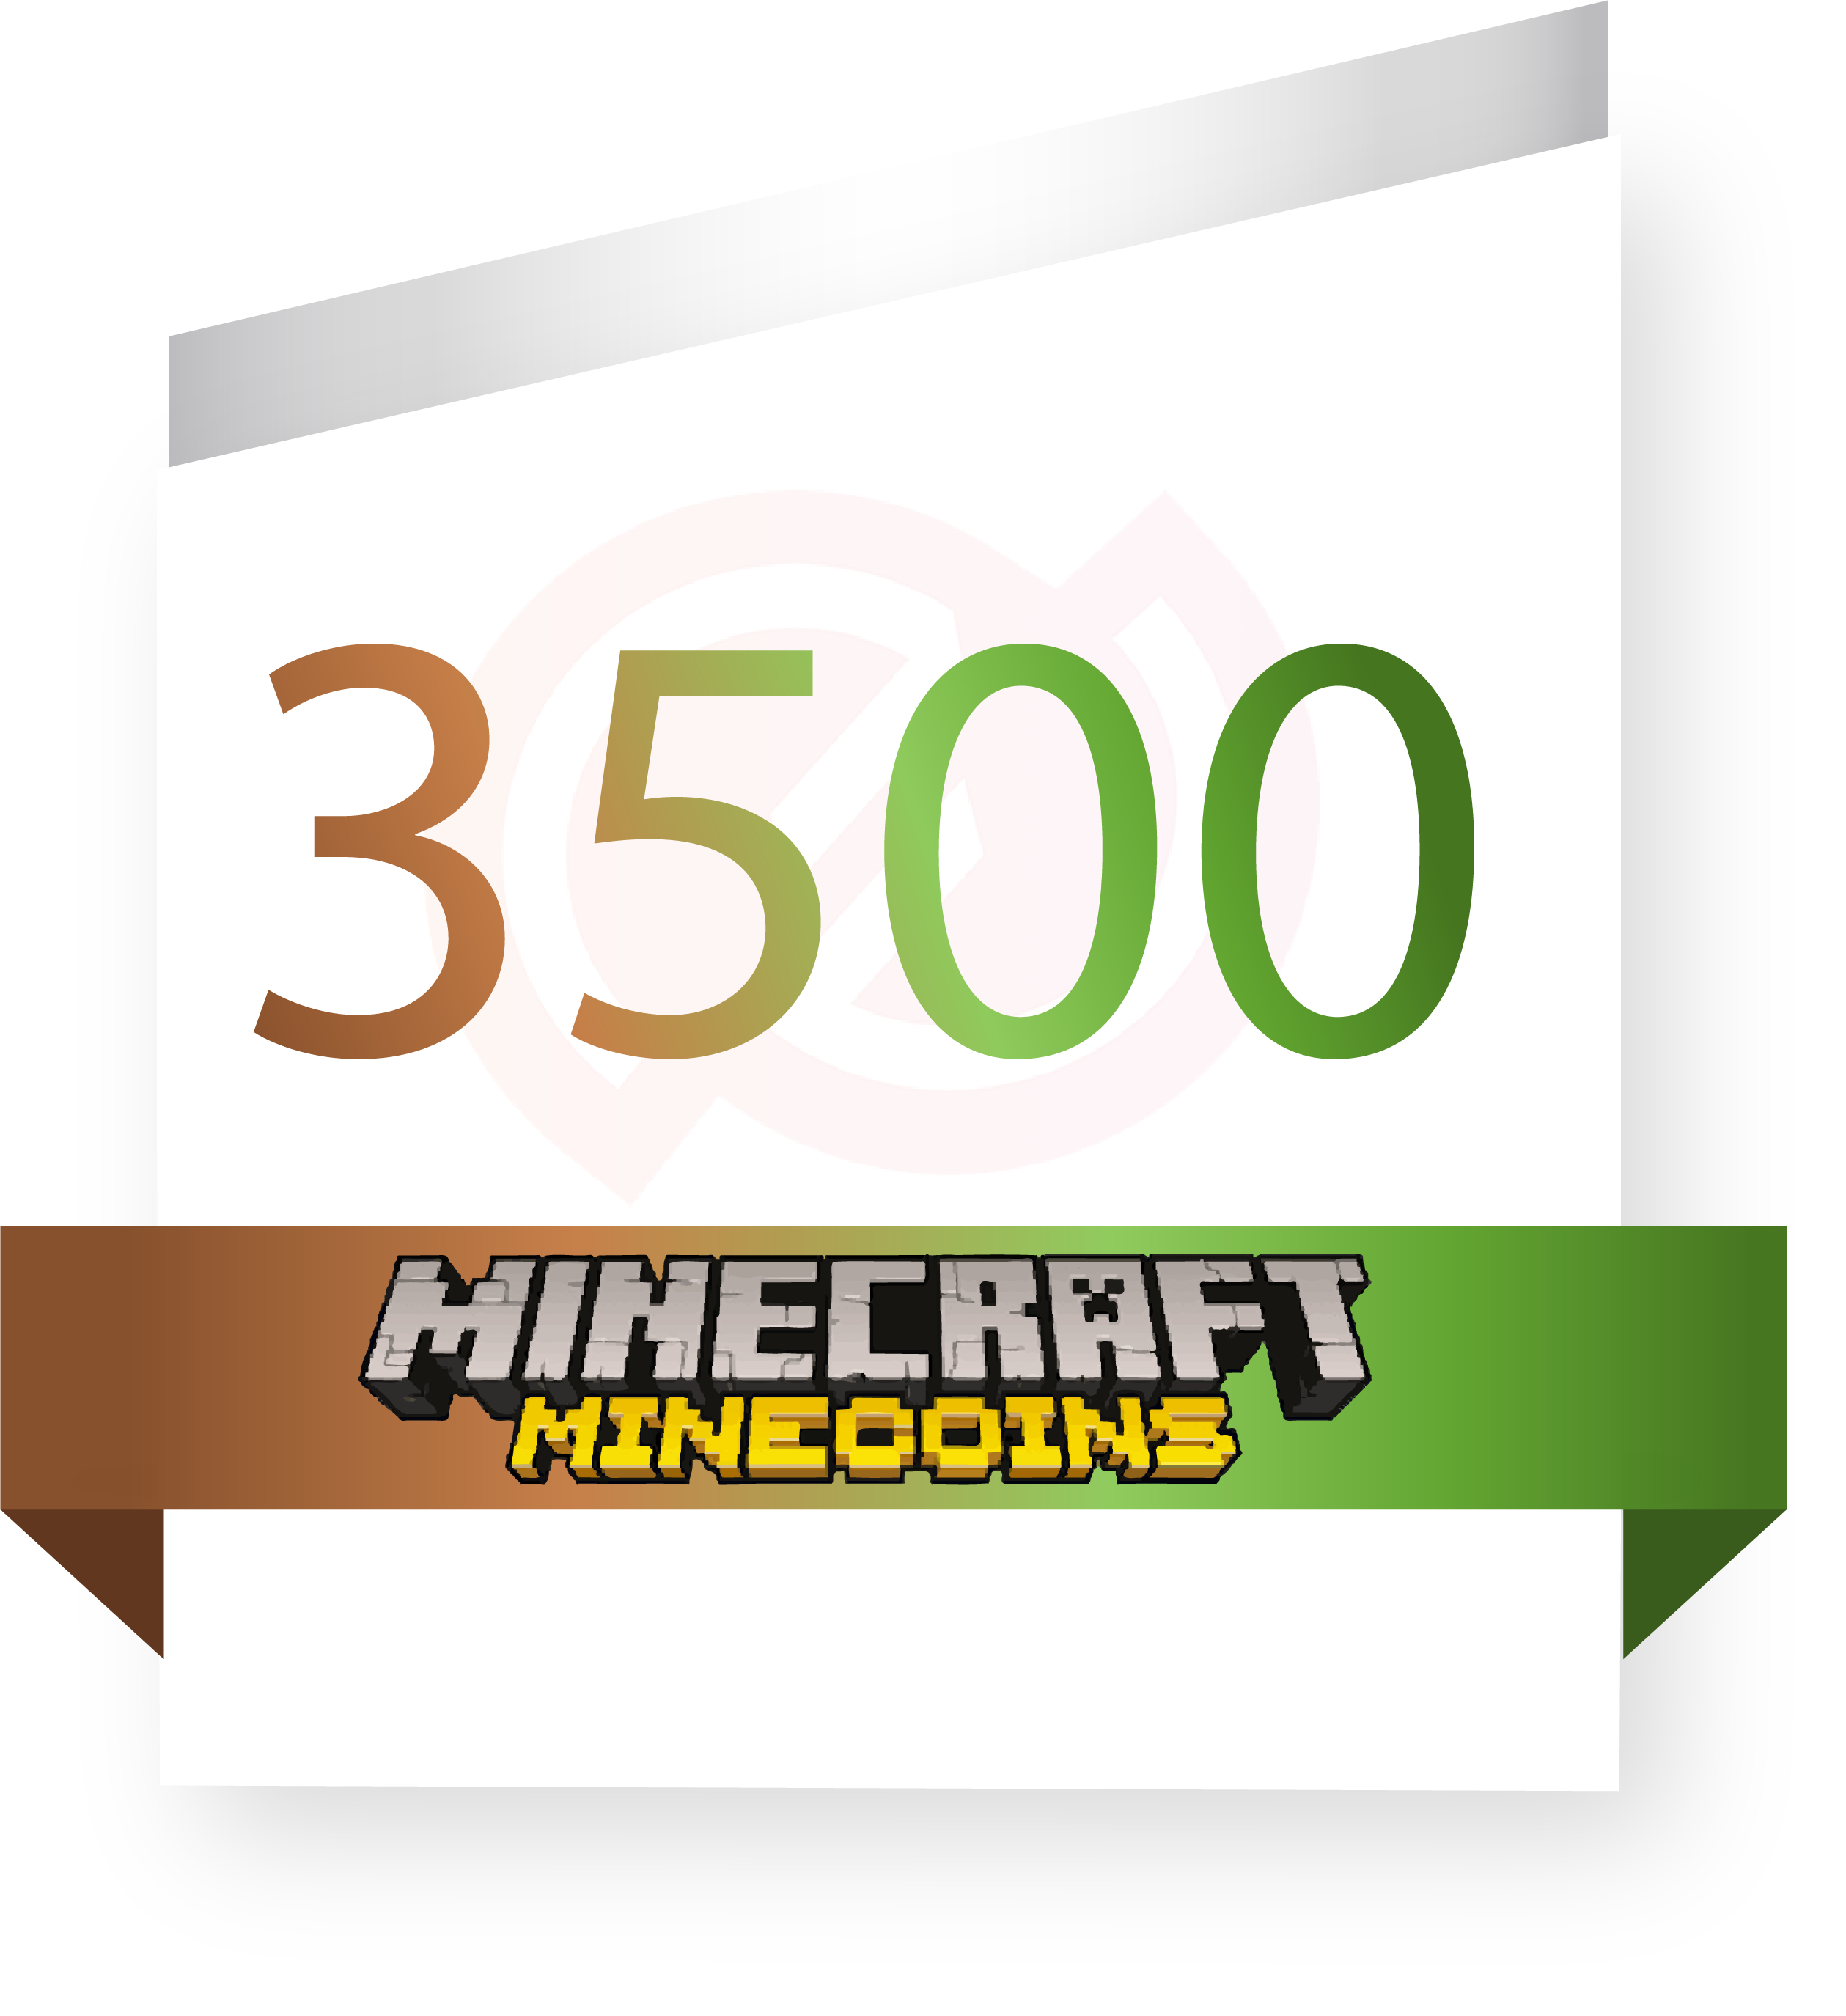 minecraft mojang download coupon